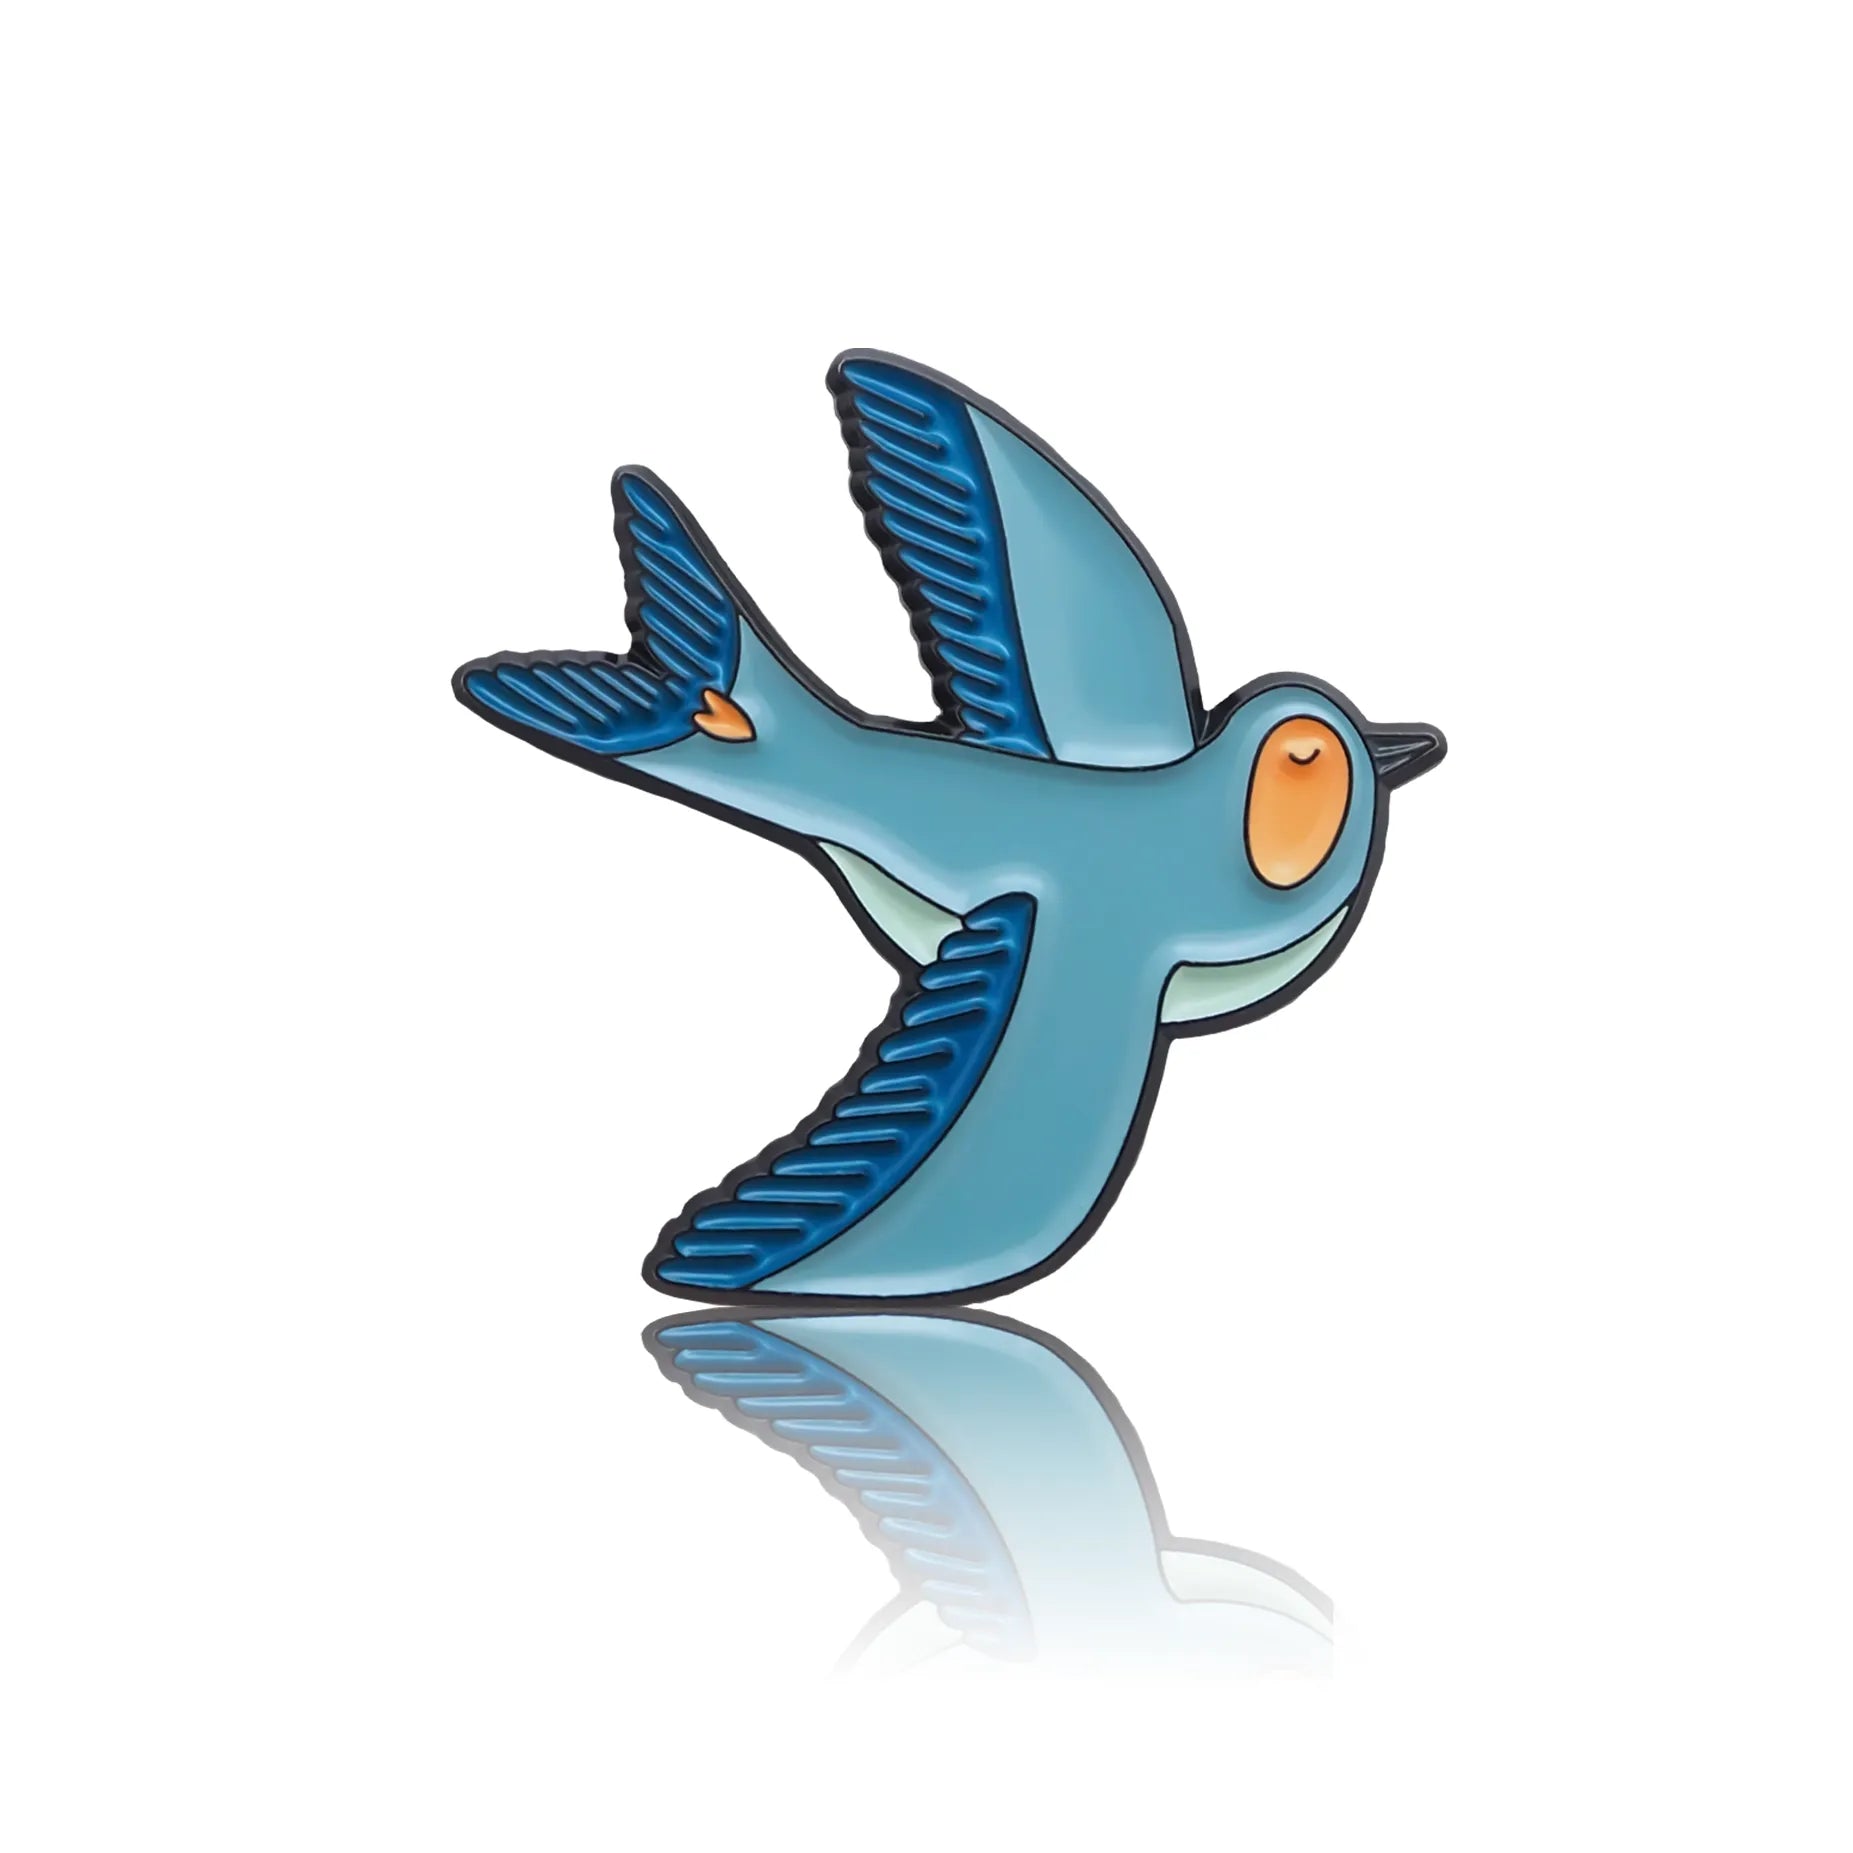 Niebieski ptaszek z małym serduszkiem na ogonie